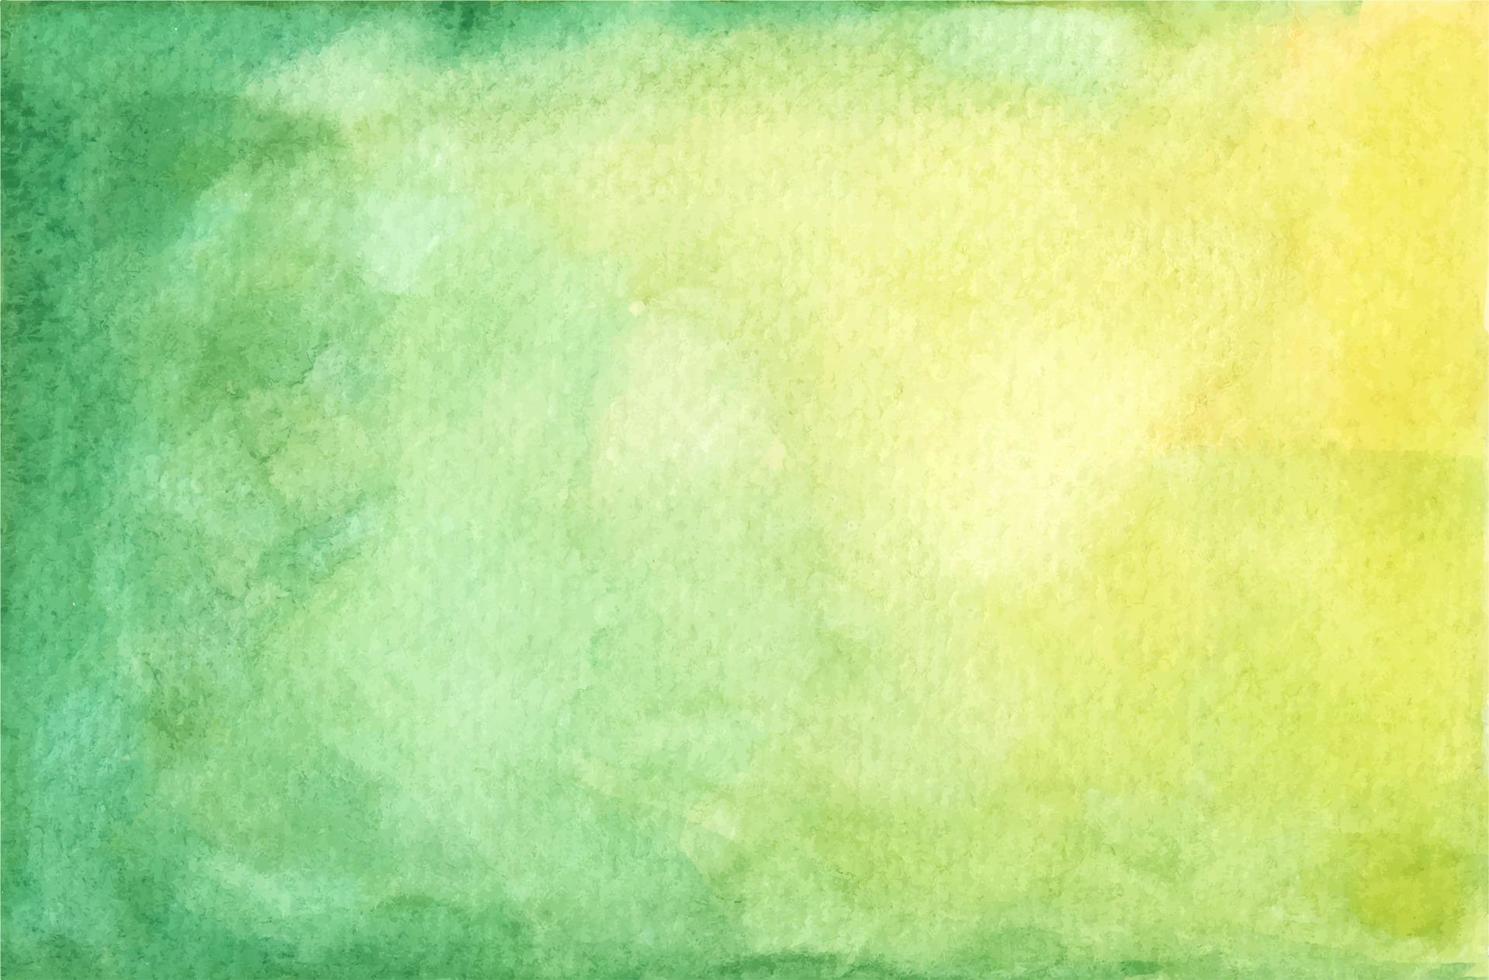 acuarela pastel textura pintada de verde y amarillo. vector